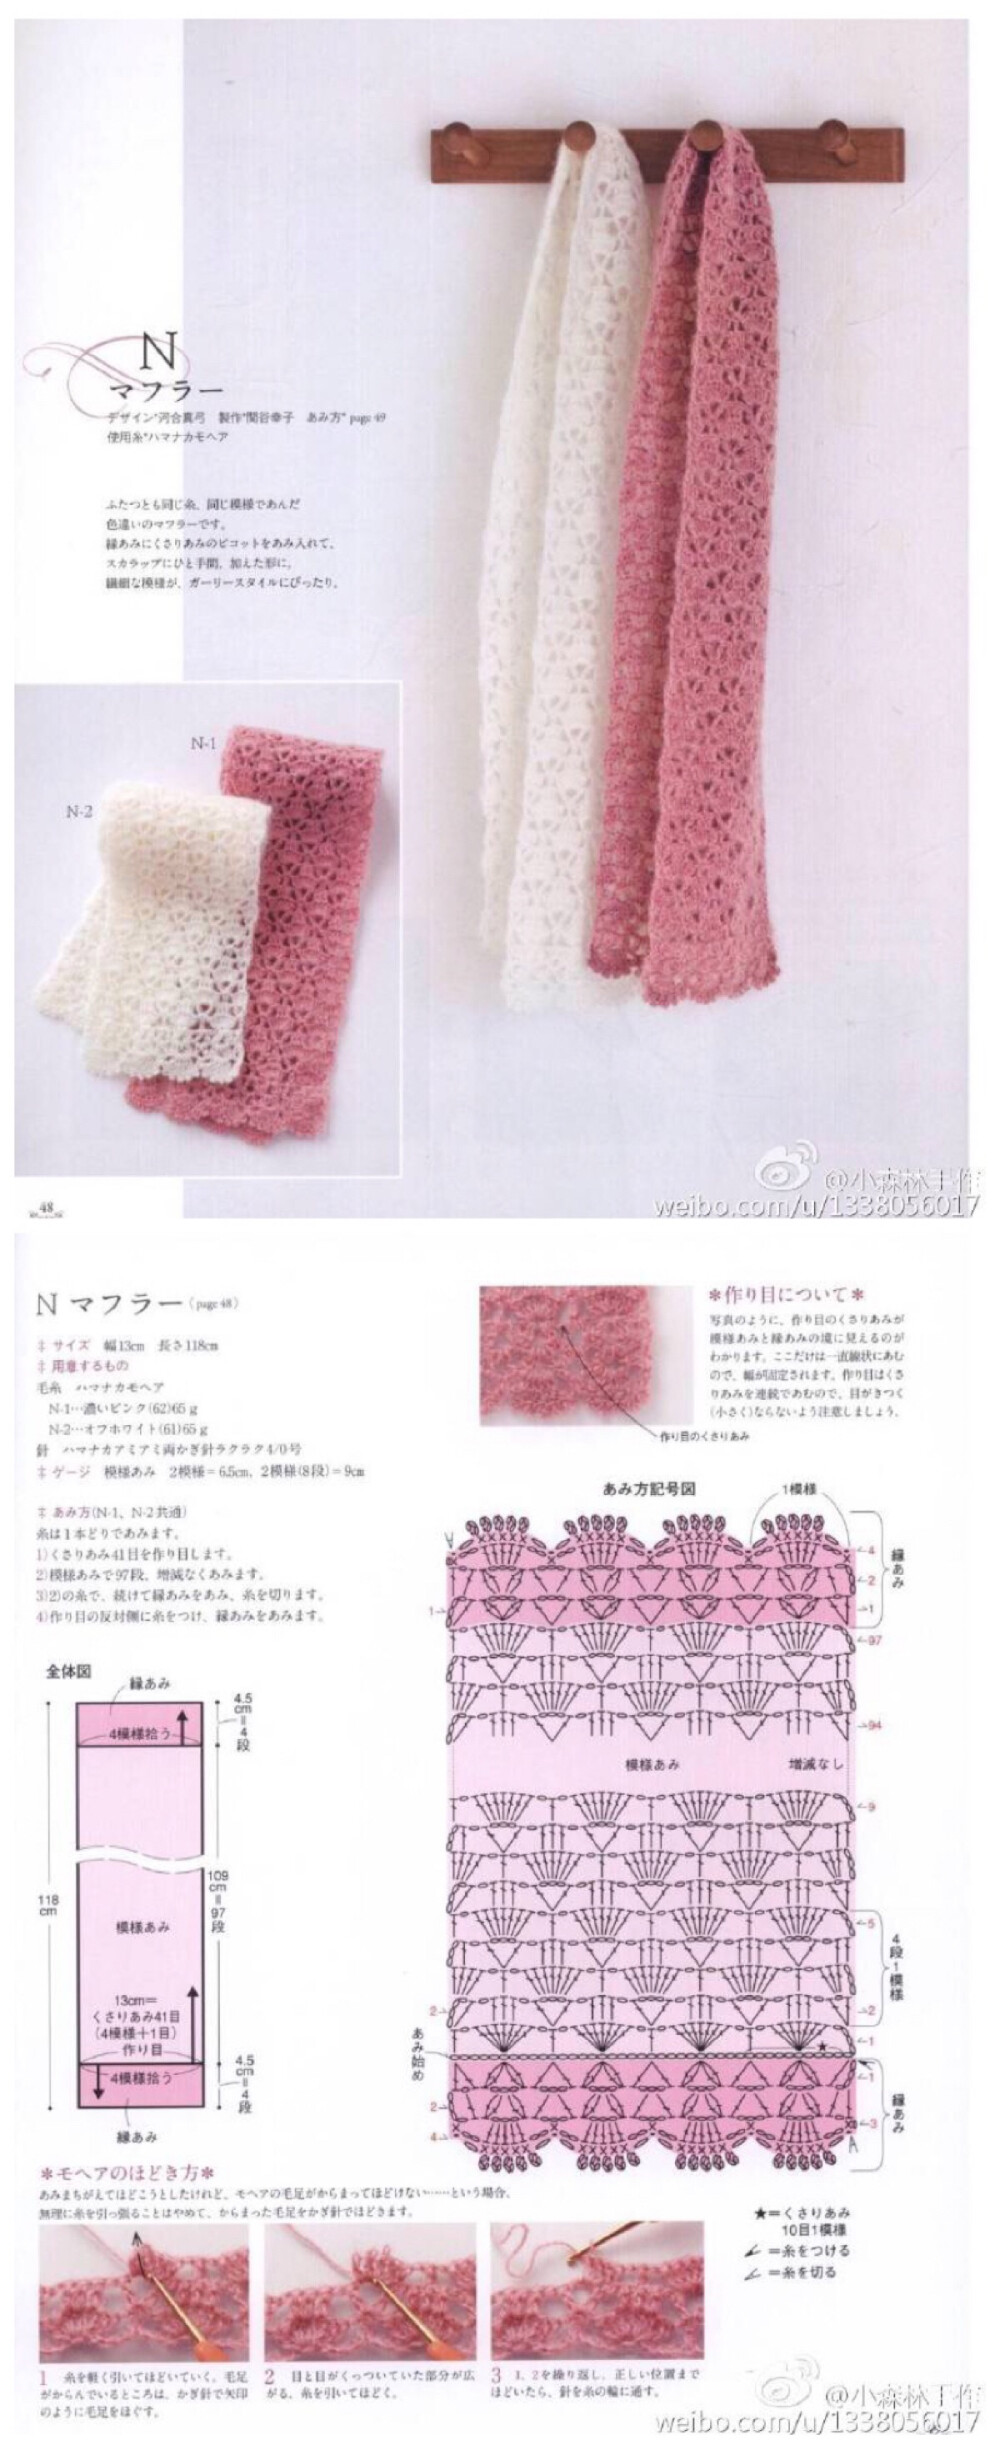 100种麻花编织图解围巾图片